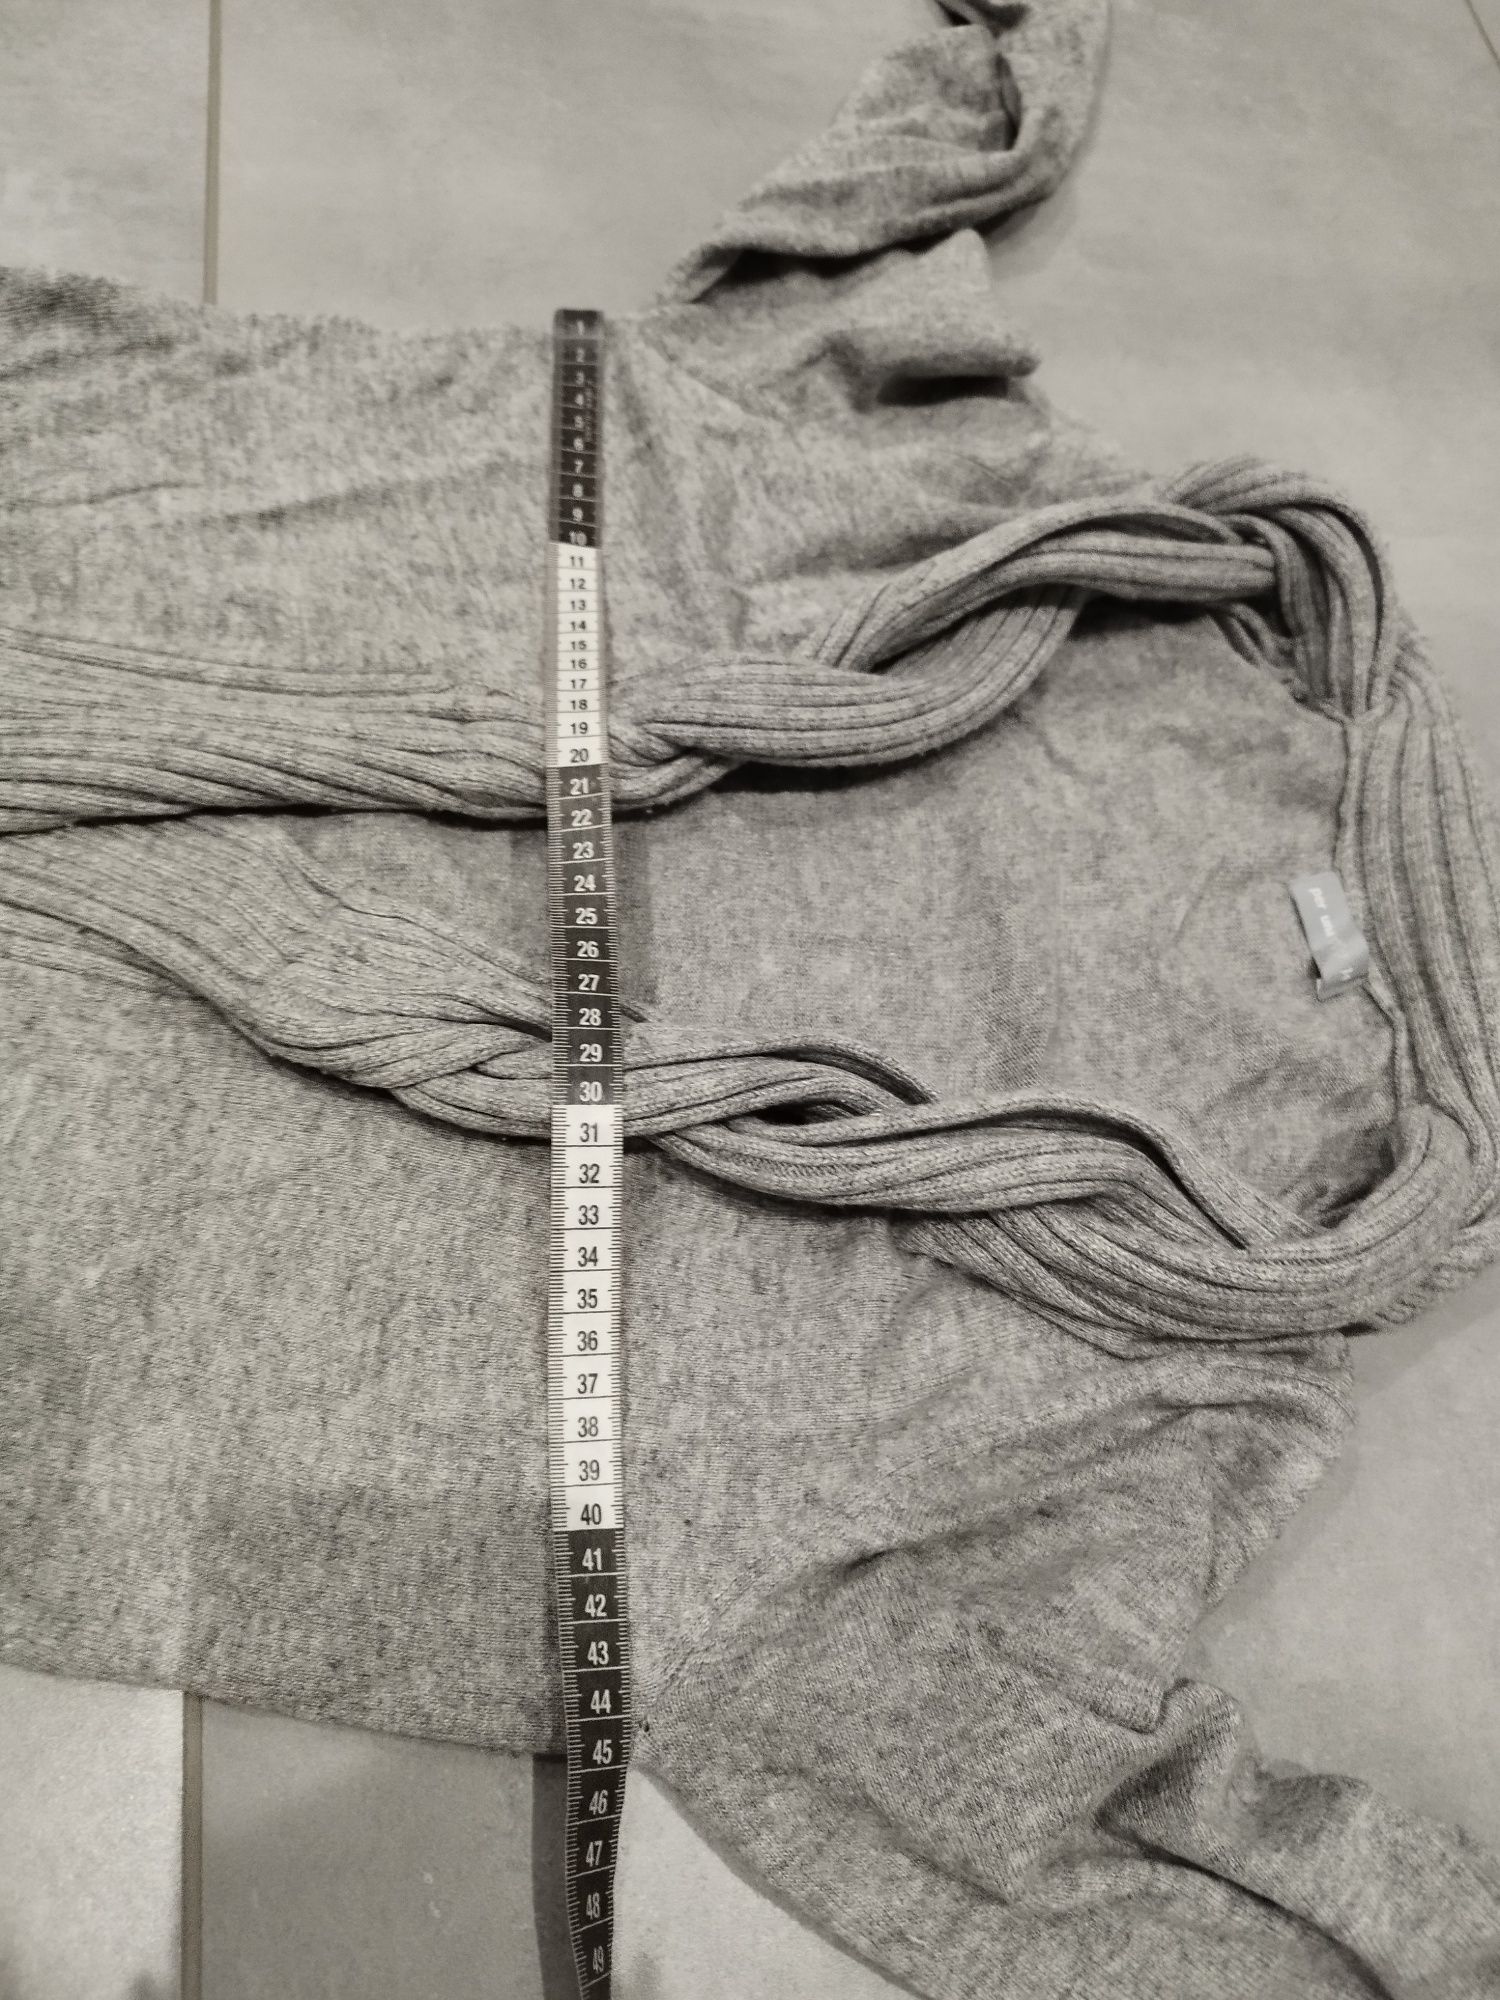 R.42 per Una szary sweterek kardigan długi